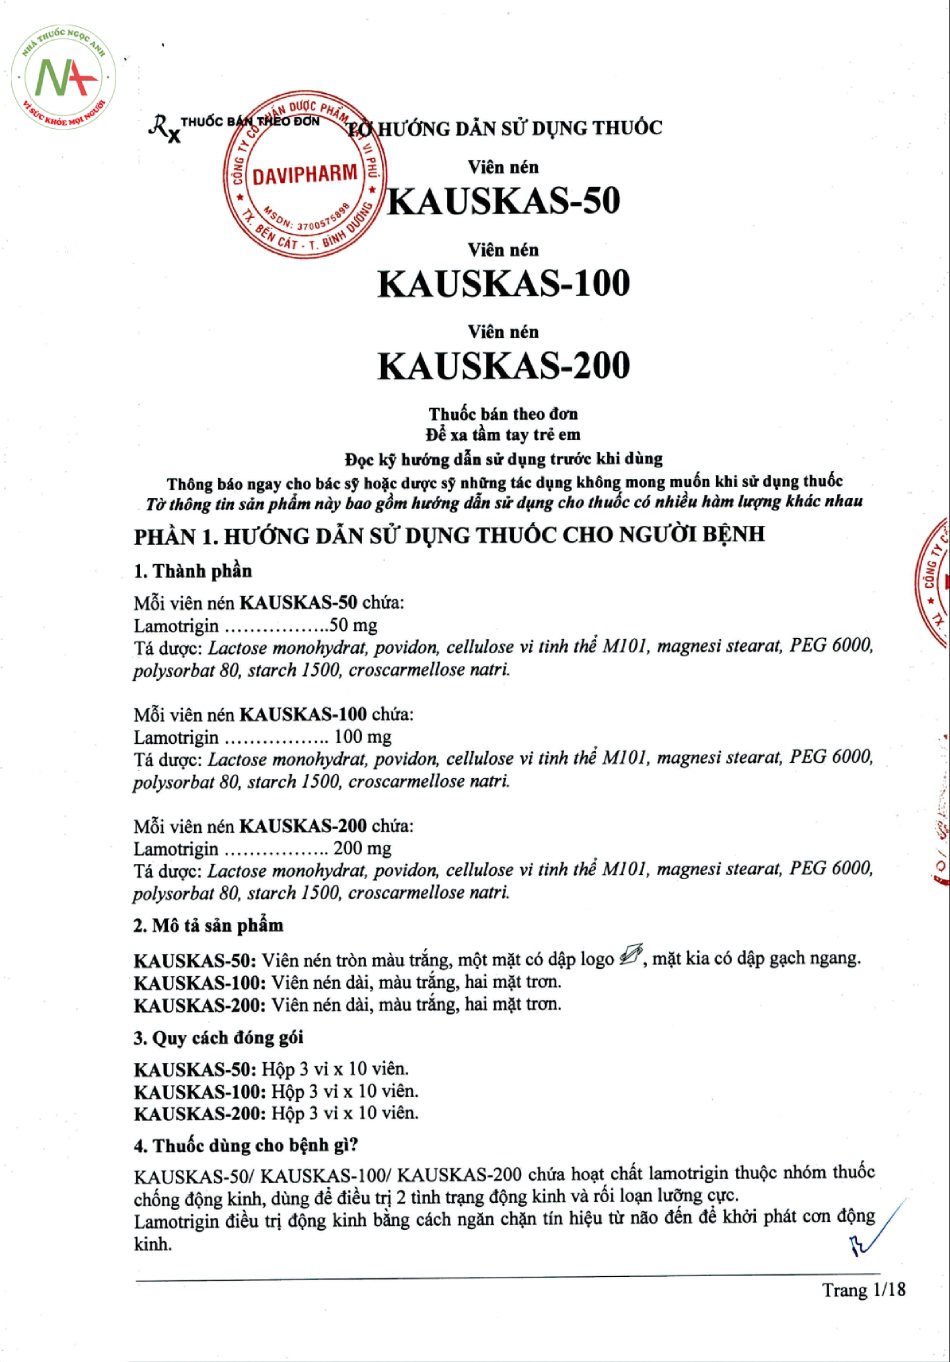 Hướng dẫn sử dụng thuốc Kauskas-50